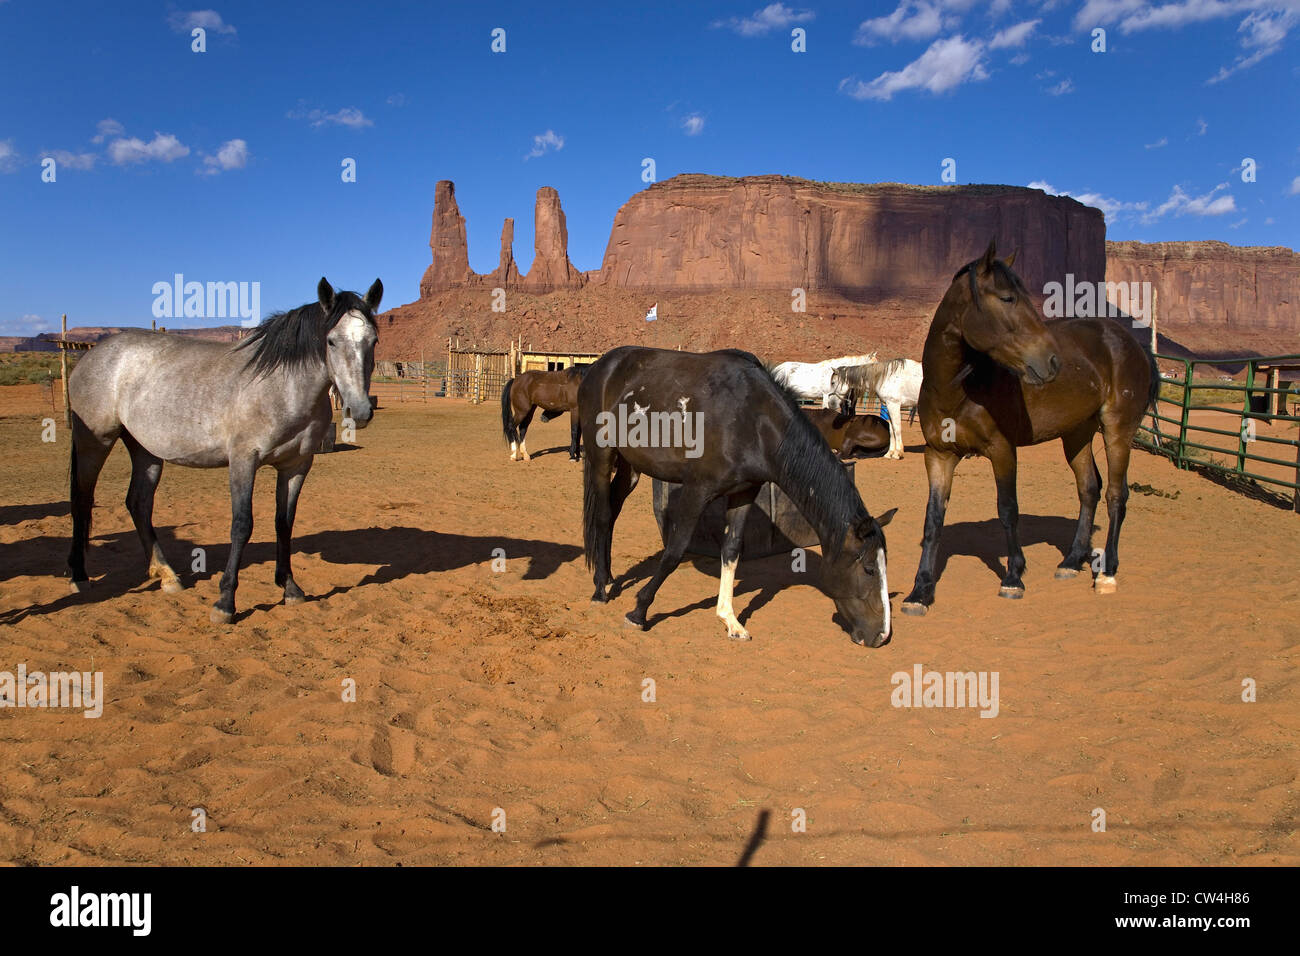 Le pâturage des chevaux devant red buttes flèches colorées Monument Valley Navajo Tribal Park l'Utah du sud, près de la frontière de l'Arizona Banque D'Images